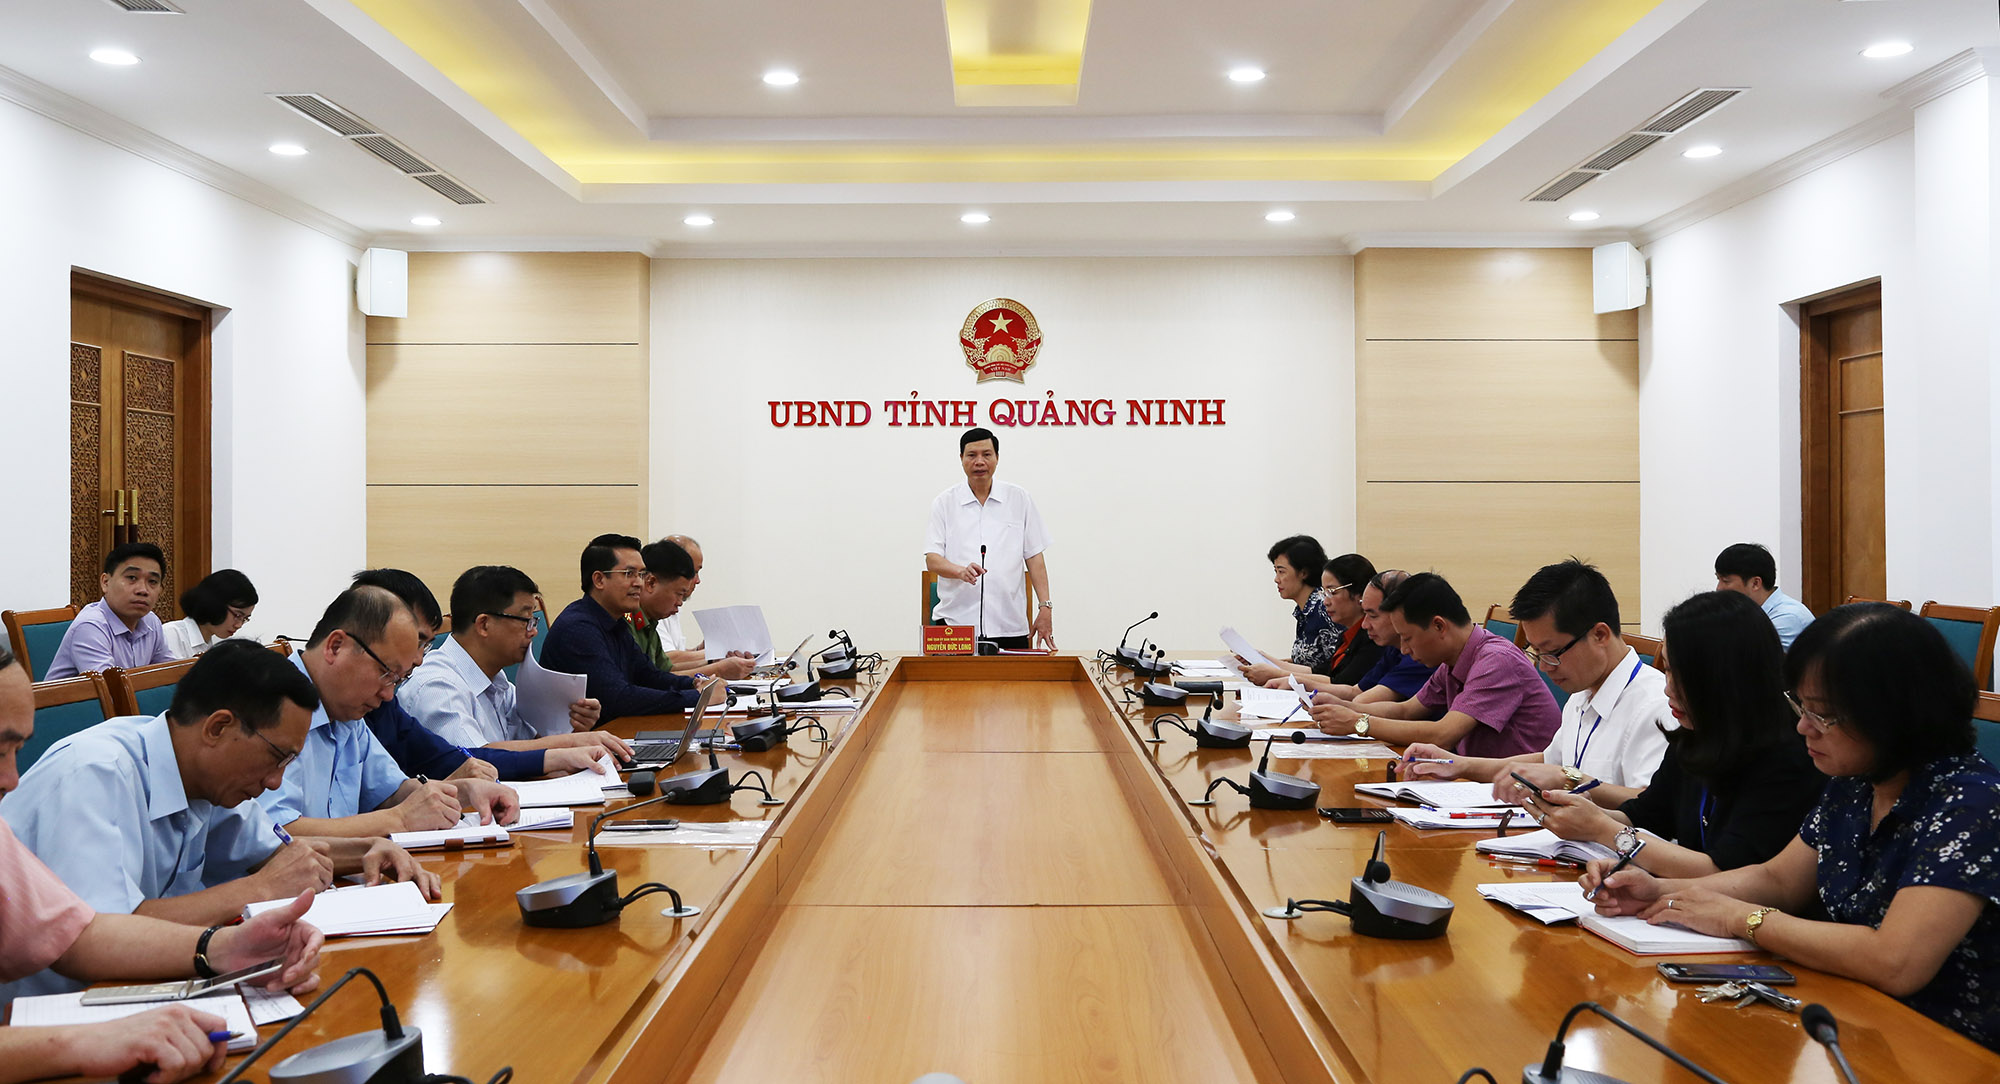 Đồng chí Nguyễn Đức Long, Phó Bí thư Tinh ủy, Chủ tịch UBND tỉnh, chủ trì hội nghị.